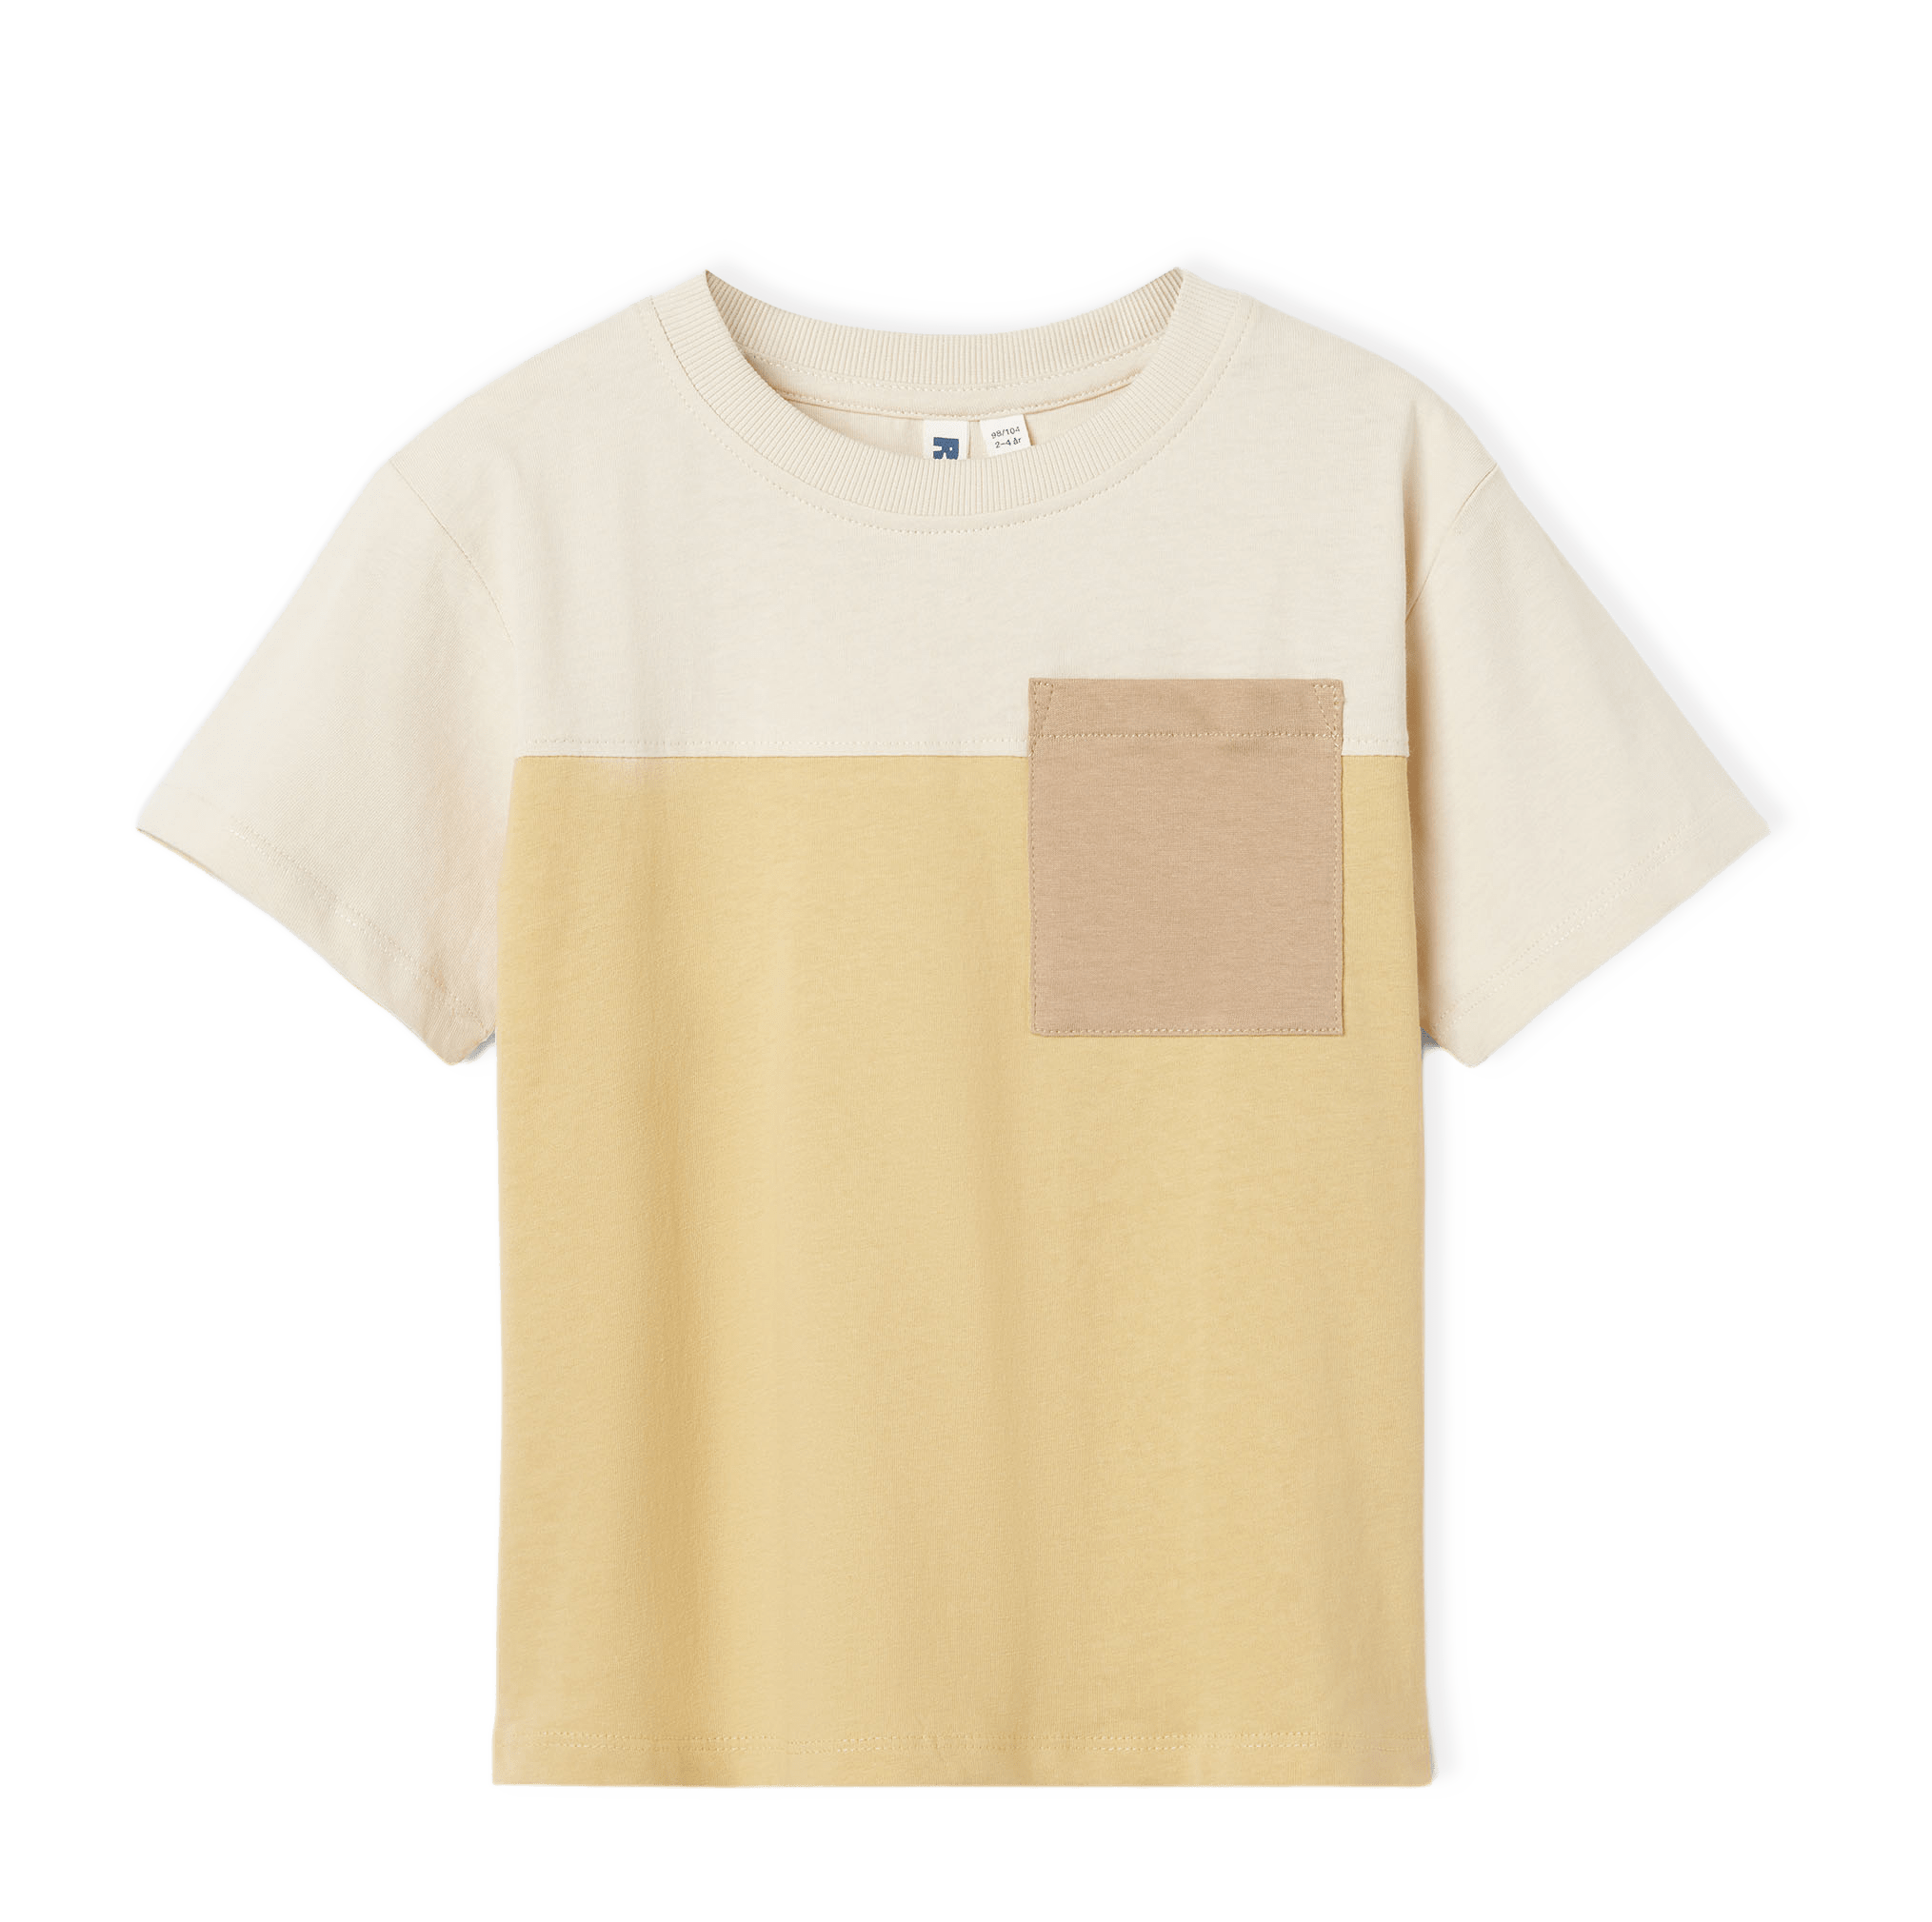 T-shirt i blockfärger HENRIK från RIKIKI